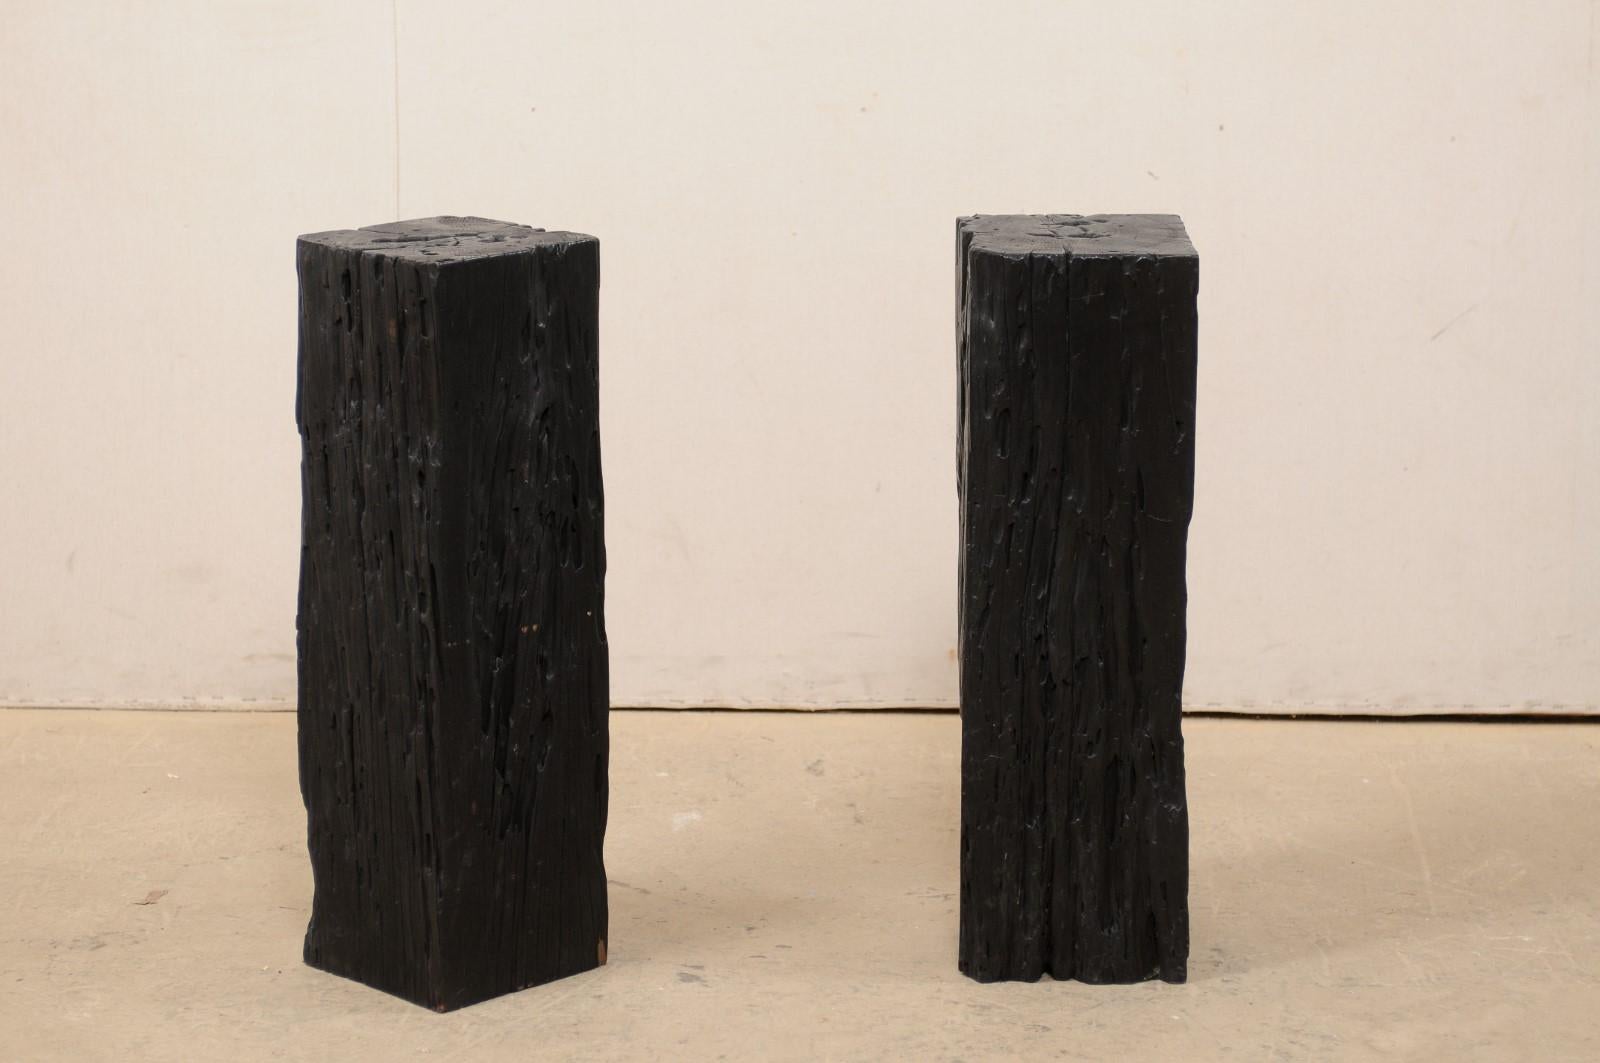 Une paire de colonnes en bois carbonisé. Cette paire de piédestaux uniques, aux corps carrés, a été créée à partir de vieux bois Merbau récupéré qui a été carbonisé, ce qui lui donne une magnifique patine noire et riche. Les dessus sont